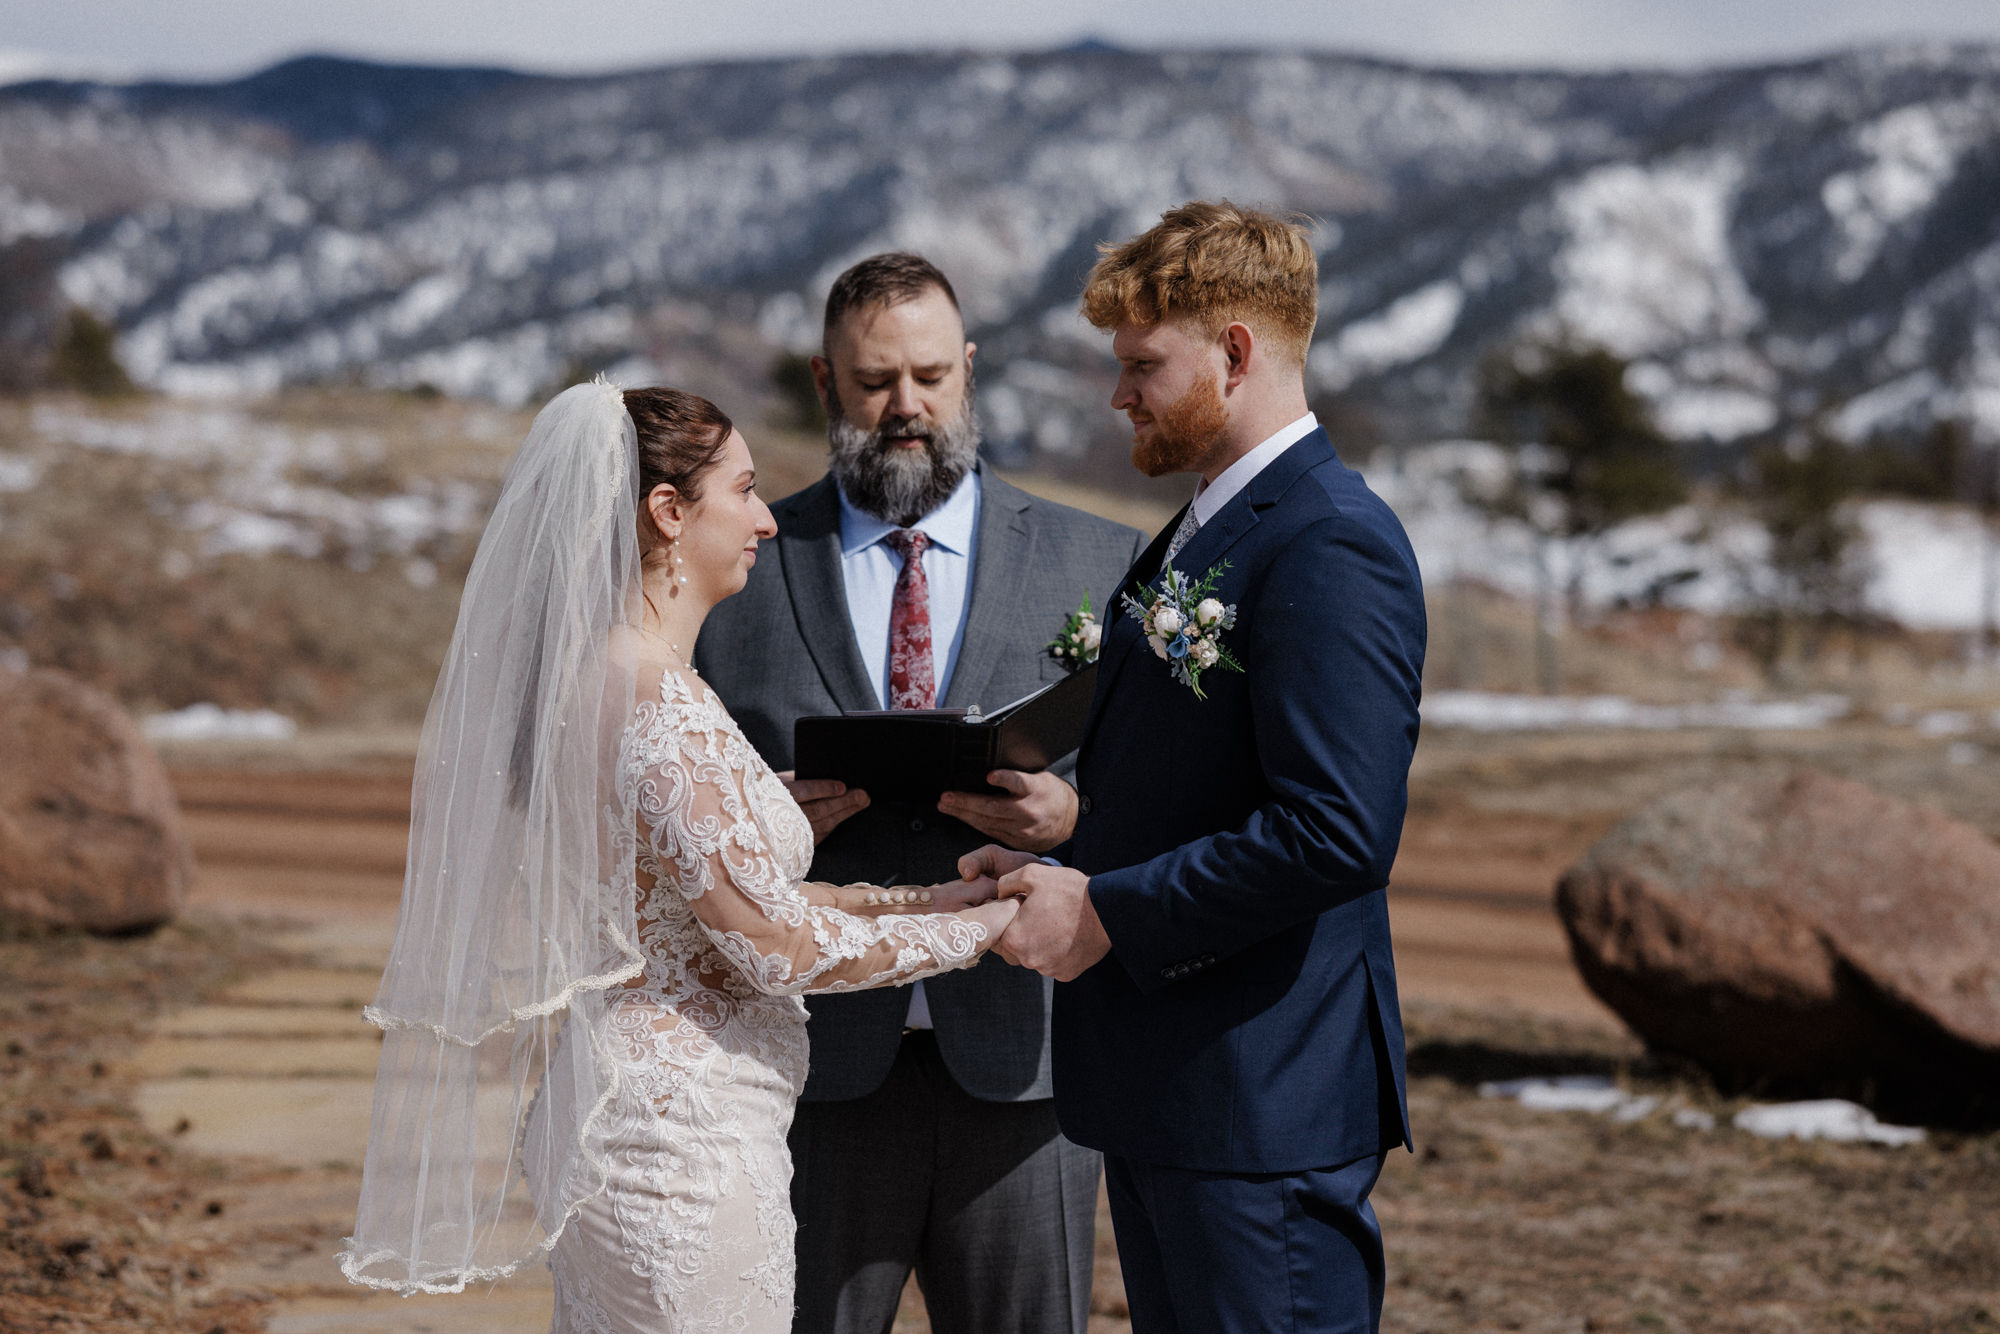 bride and groom say wedding vows at colorado micro wedding venue - airbnb.